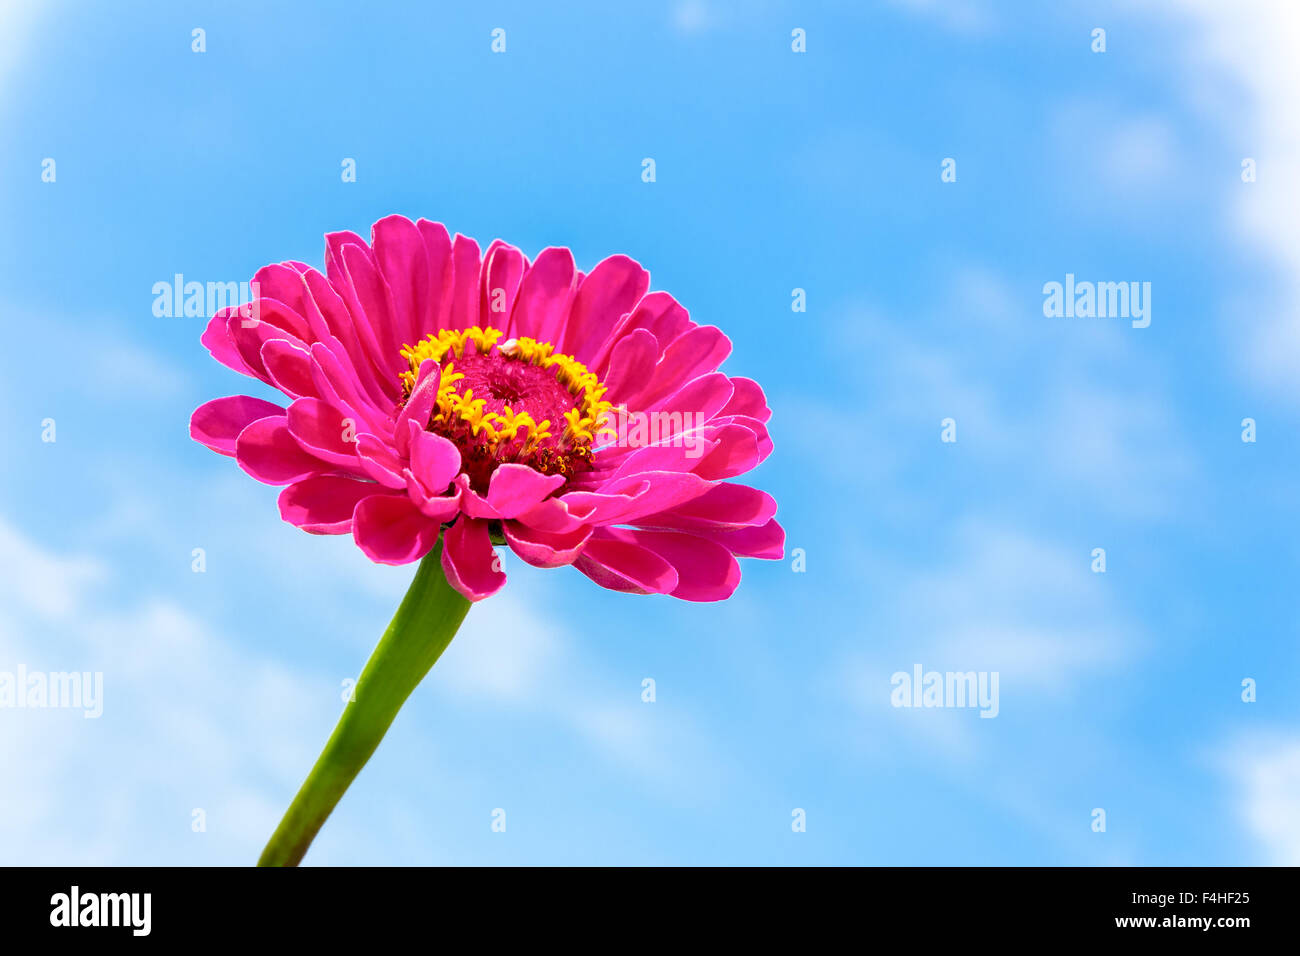 Una rosa Zinnia fiore sullo stelo con cielo blu Foto Stock